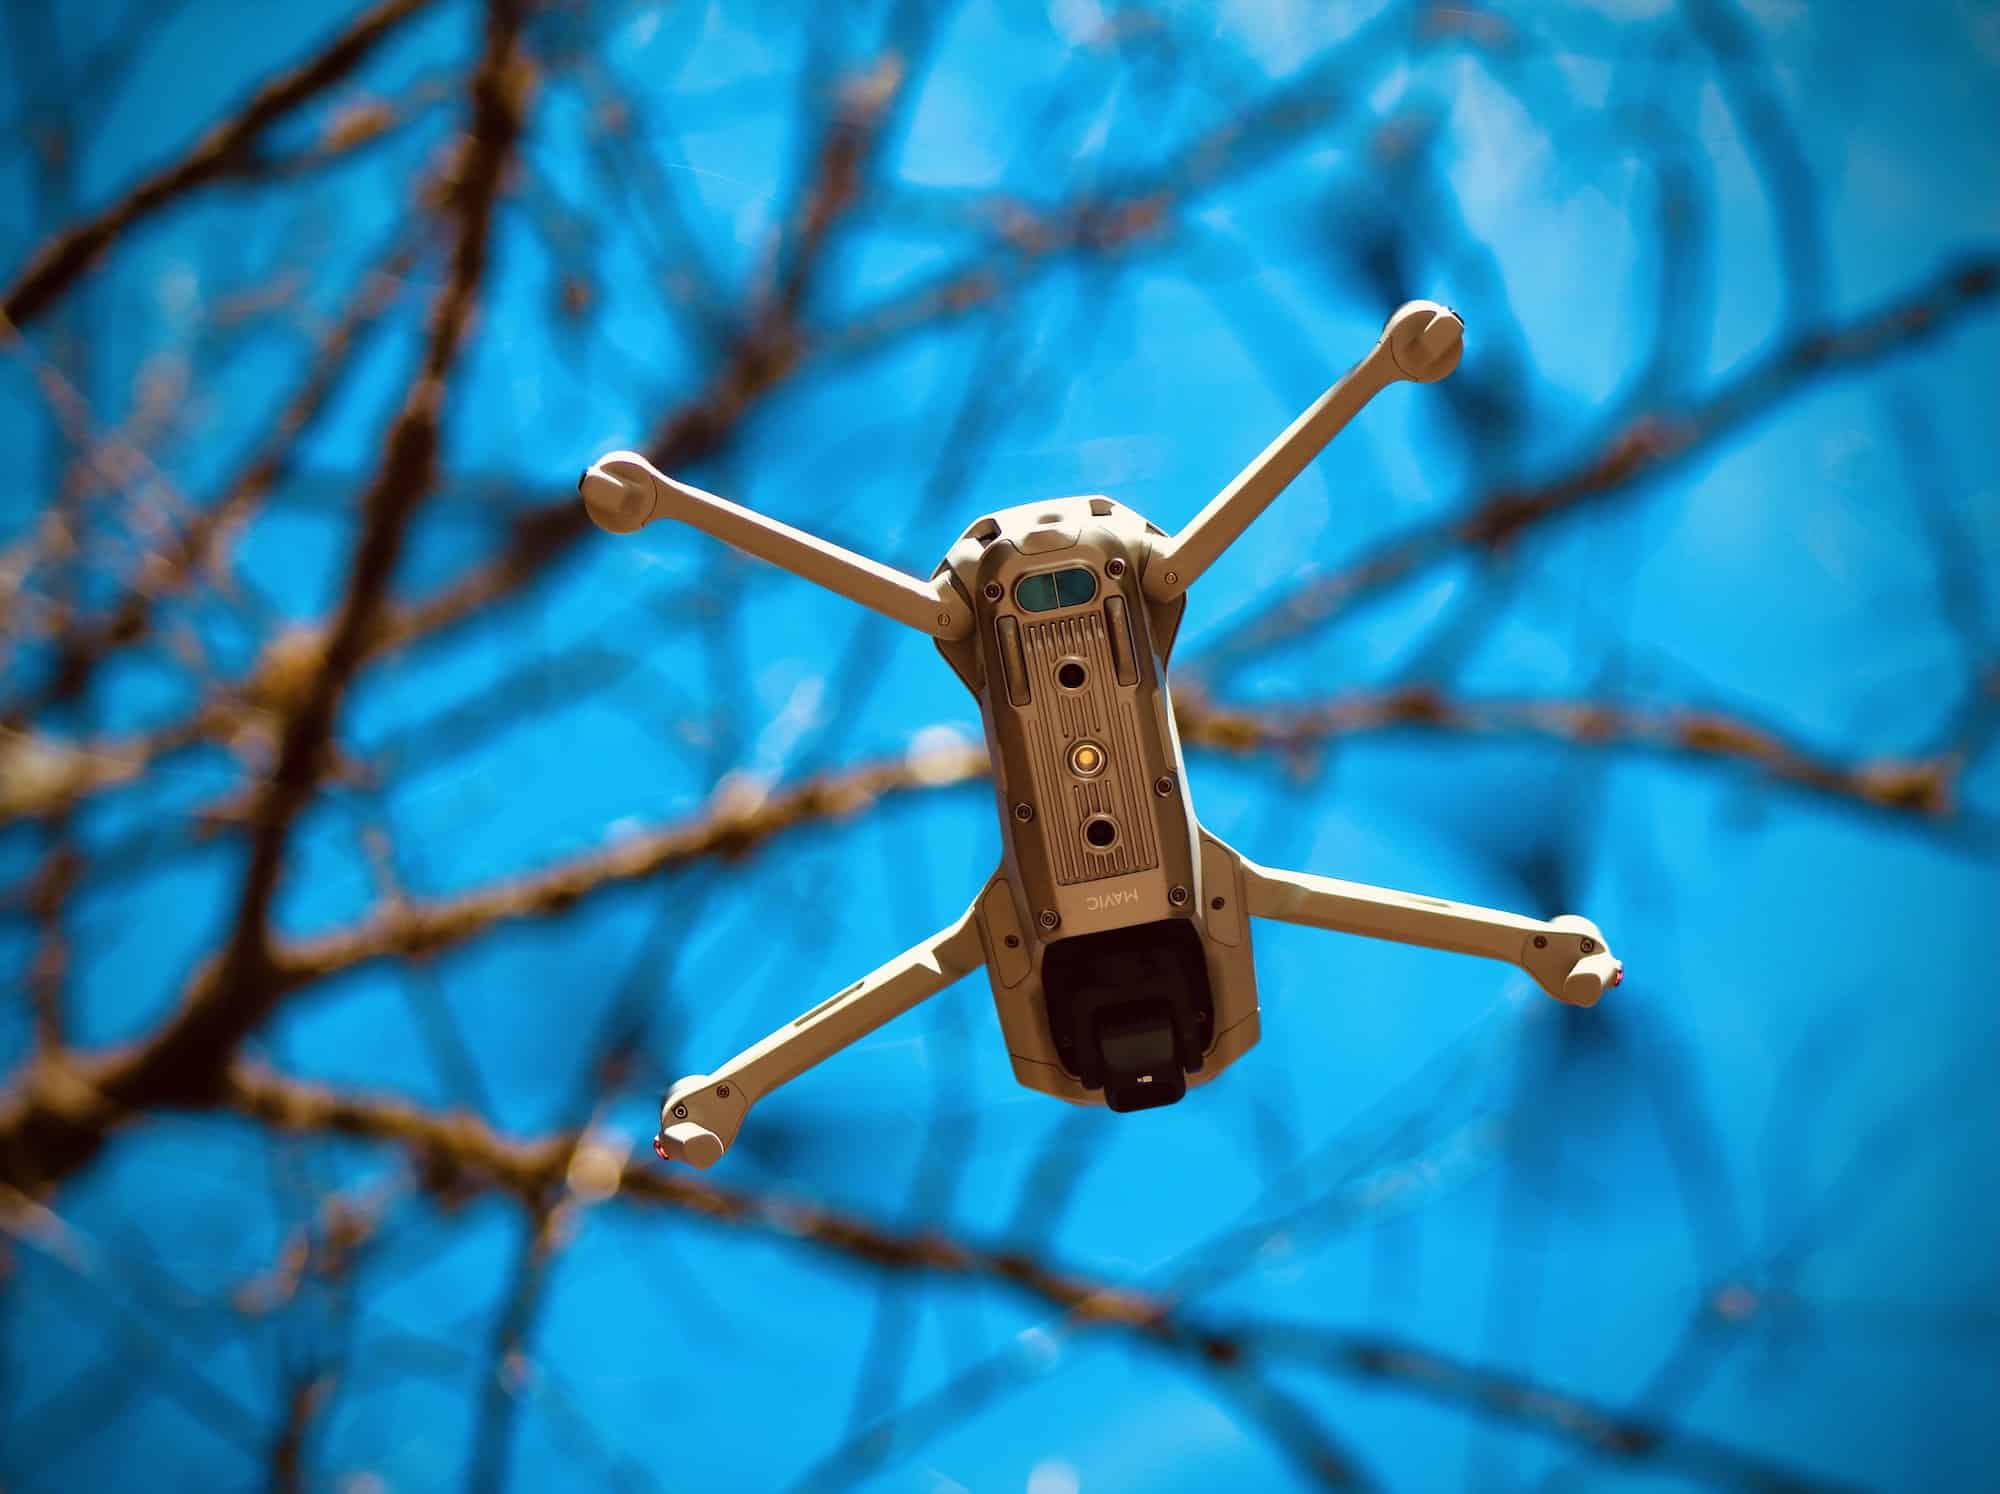 Choisir le meilleur drone pas cher : que faut-il prendre en compte ?